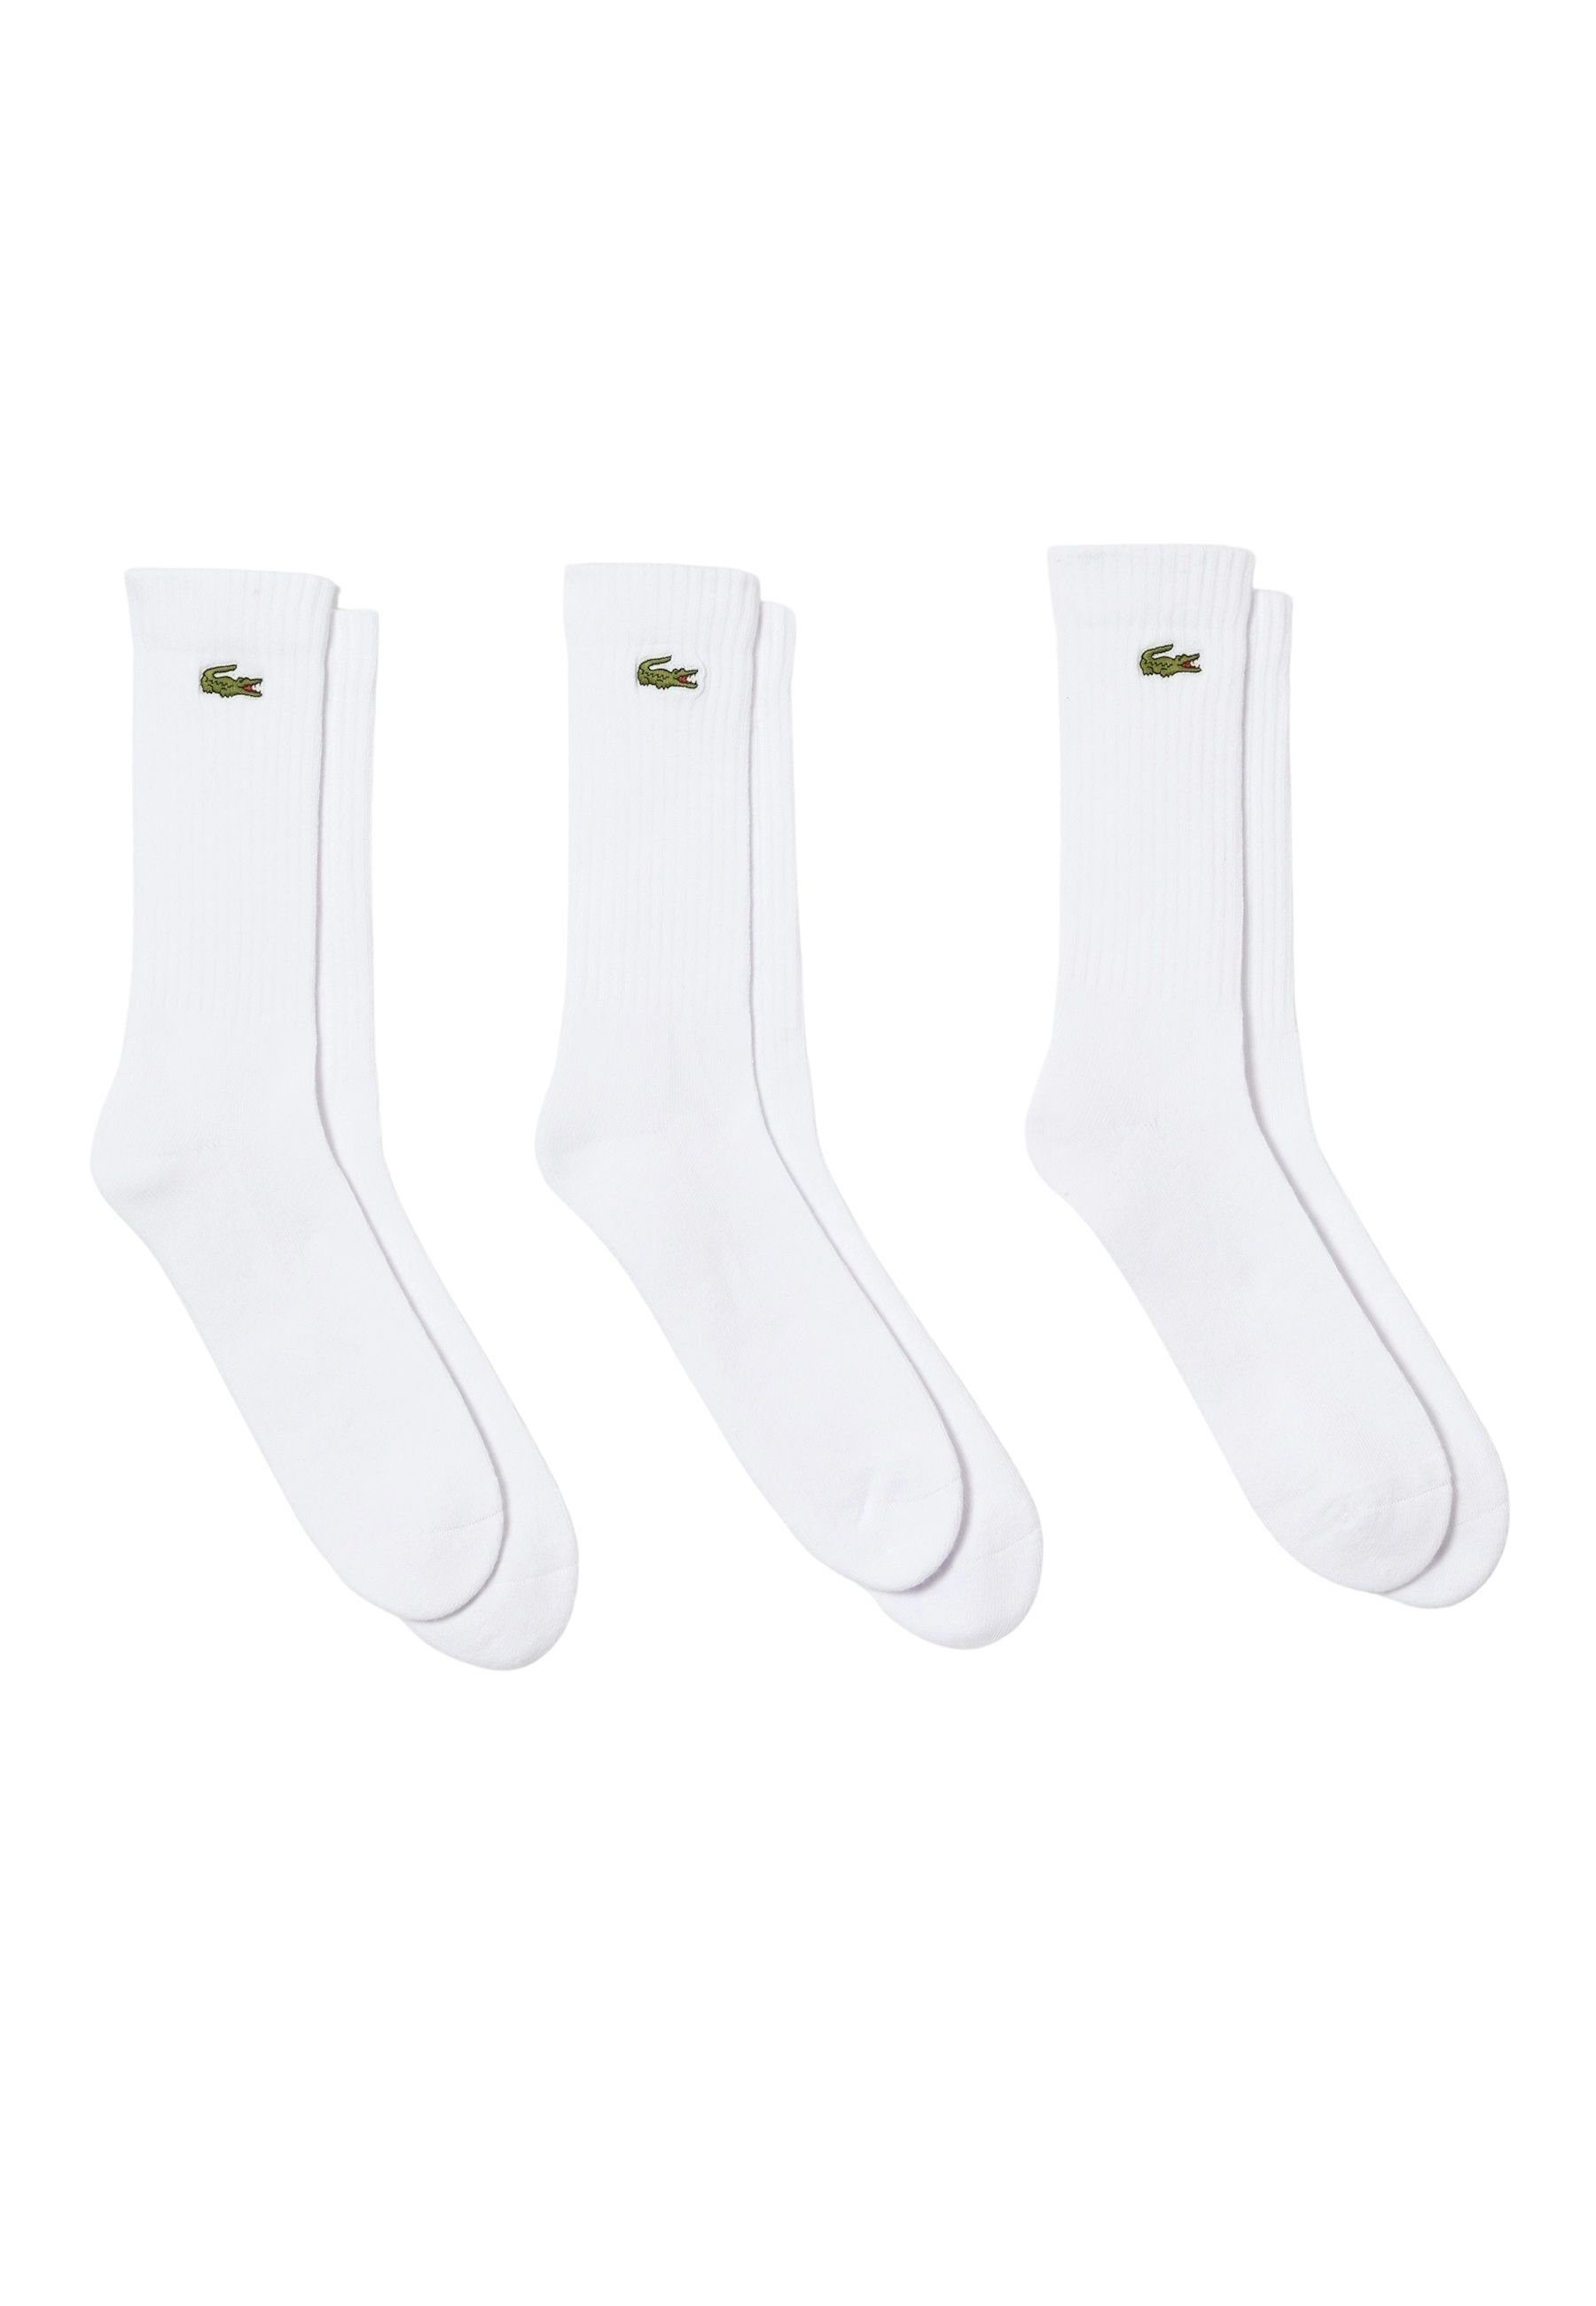 Lacoste Socken Socken Permanent Offer Dreierpack (3-Paar) Socken hohe weiß